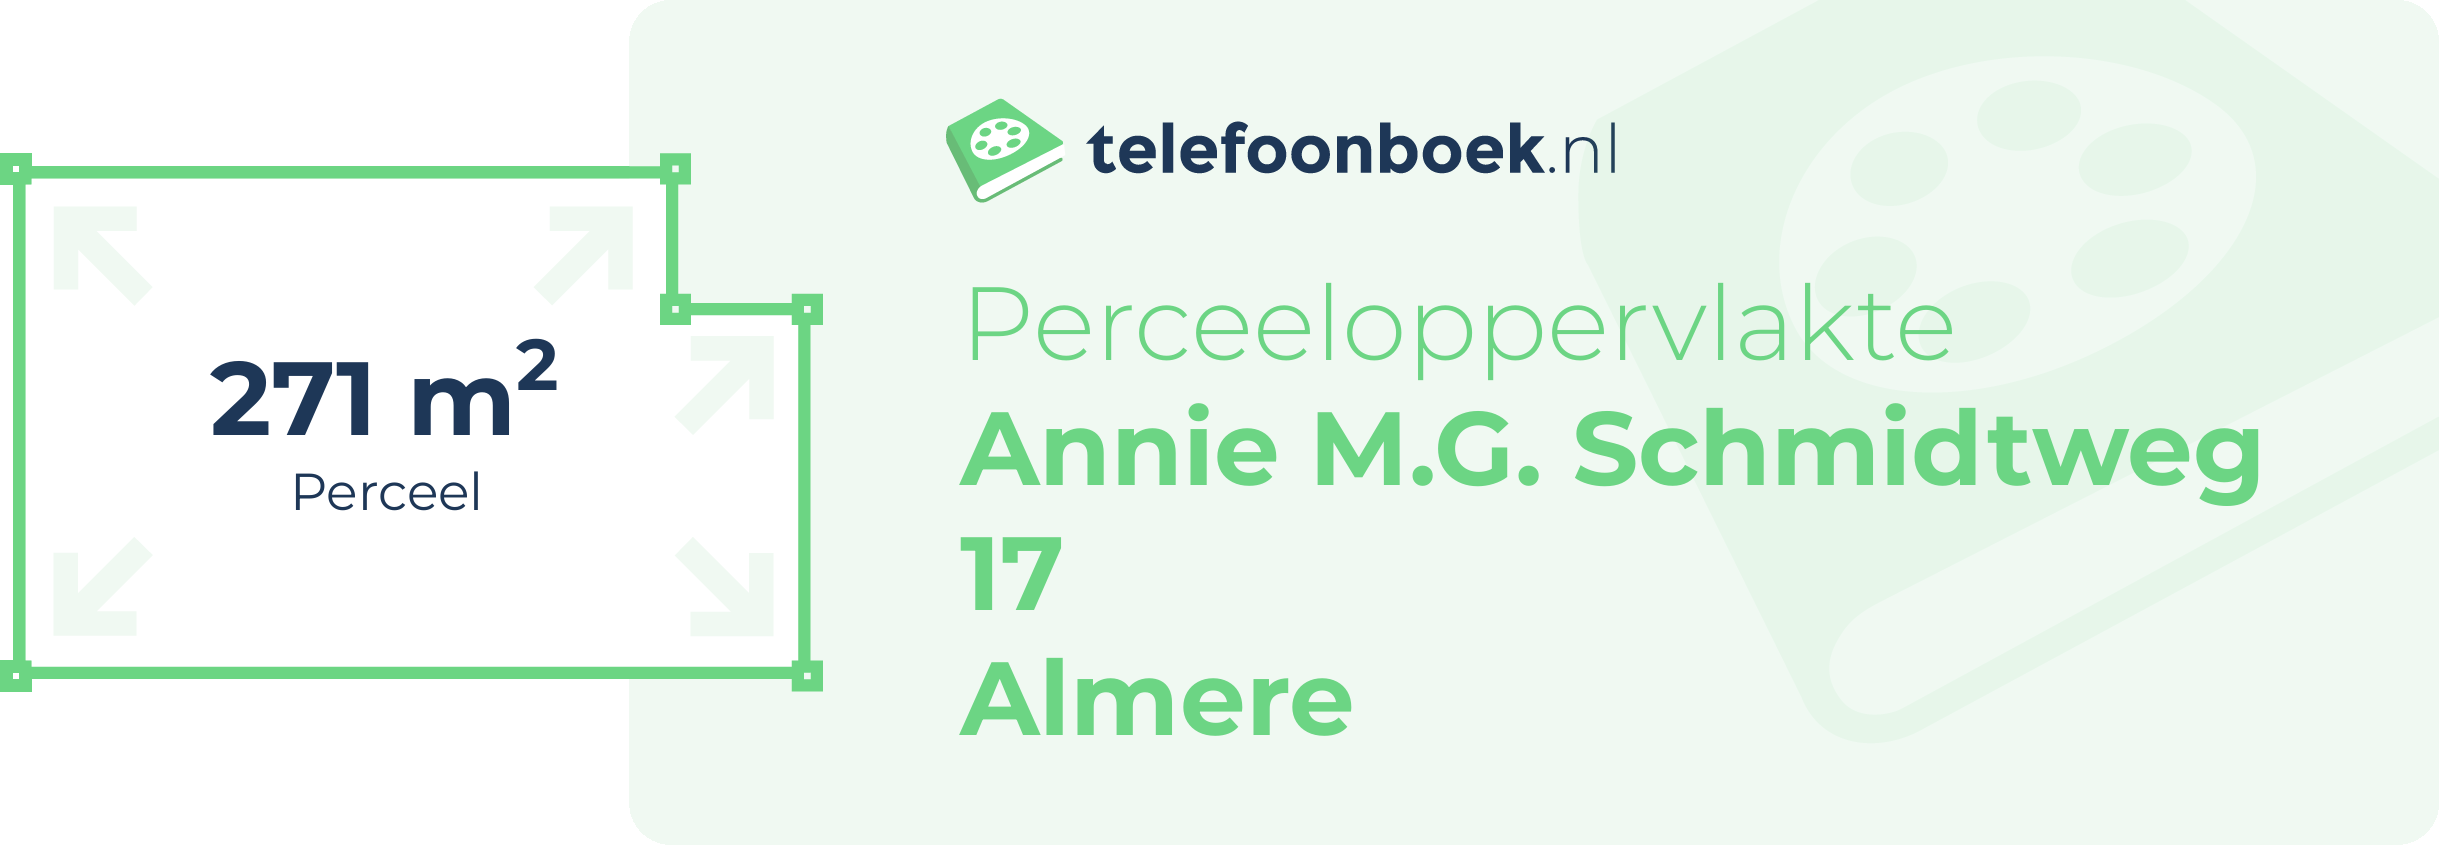 Perceeloppervlakte Annie M.G. Schmidtweg 17 Almere